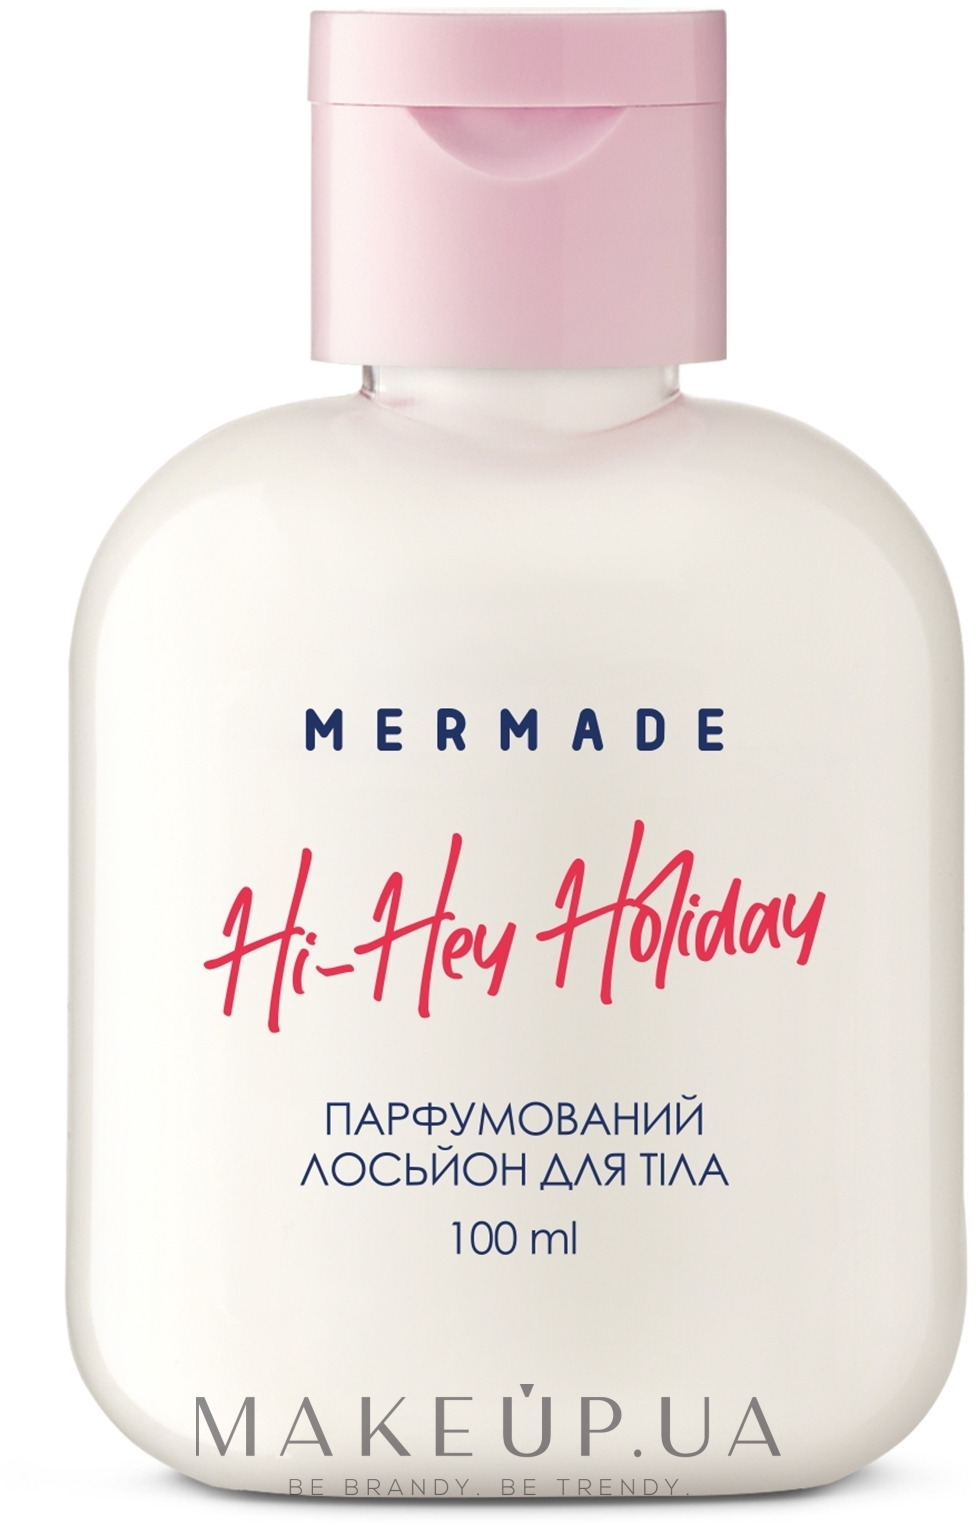 Mermade Hi-Hey-Holiday - Парфюмированный лосьон для тела — фото 100ml